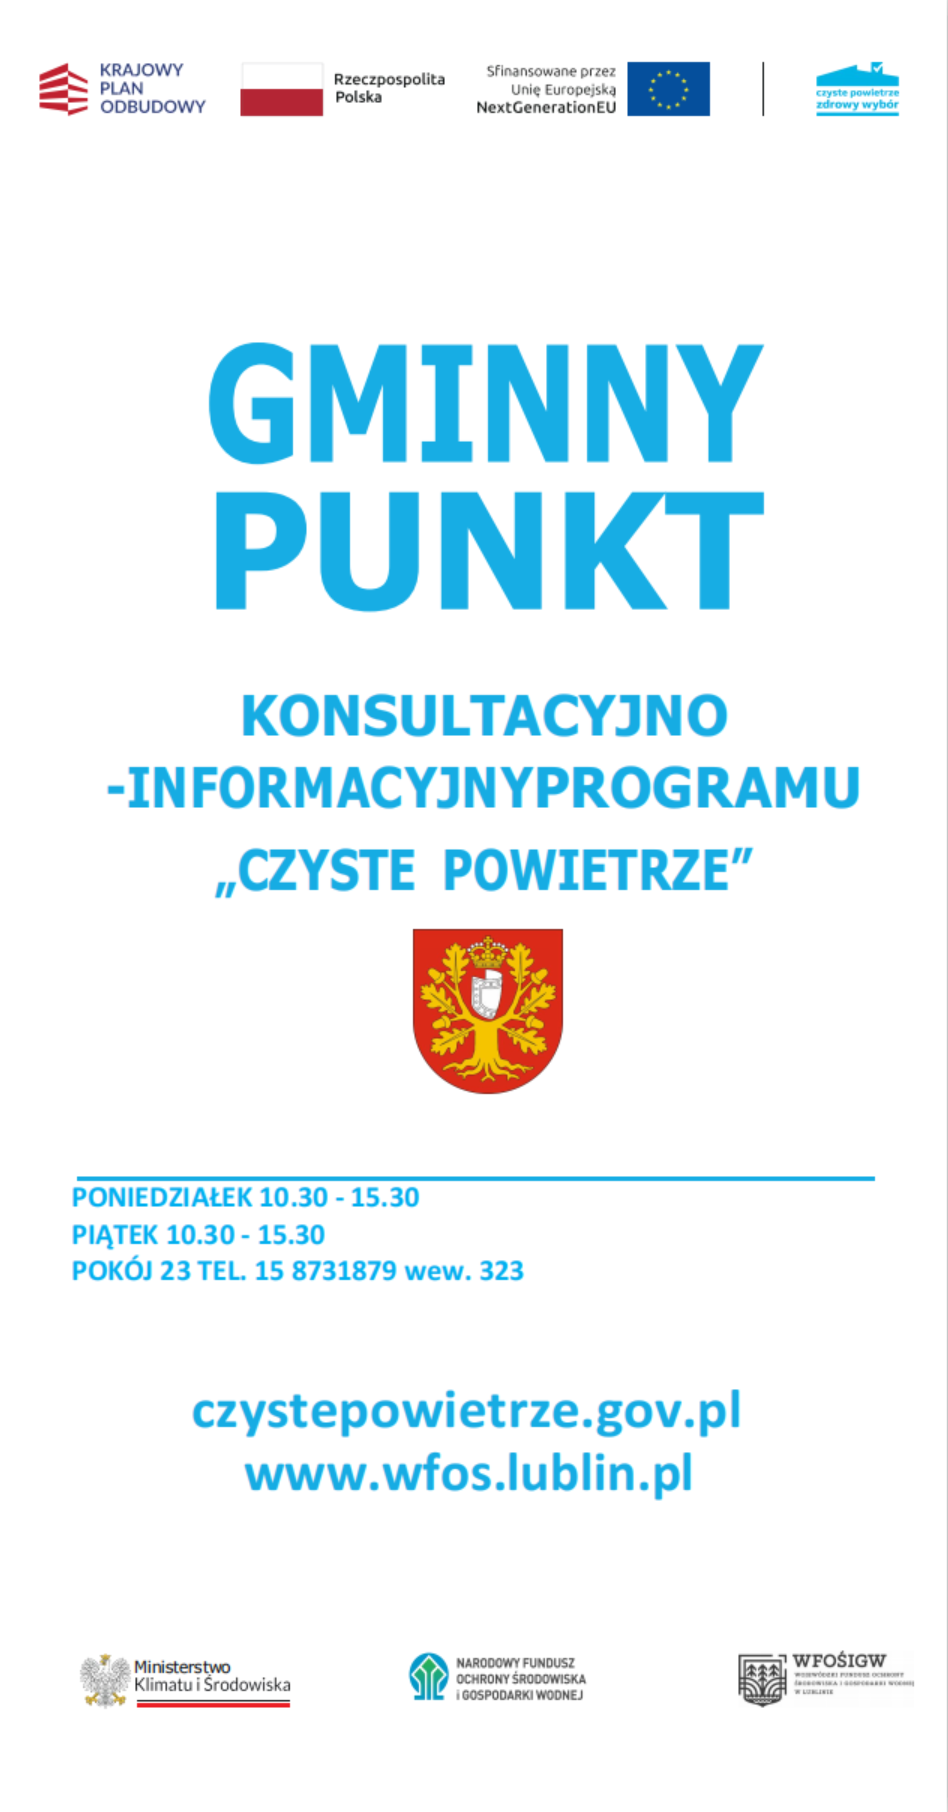 Plakat informacyjny o Gminnym Punkcie Konsultacyjno-Informacyjnym Programu Czyste Powietrze, z herbem Polski i logotypami ministerstw, wraz z danymi kontaktowymi i logotypem WFOS.